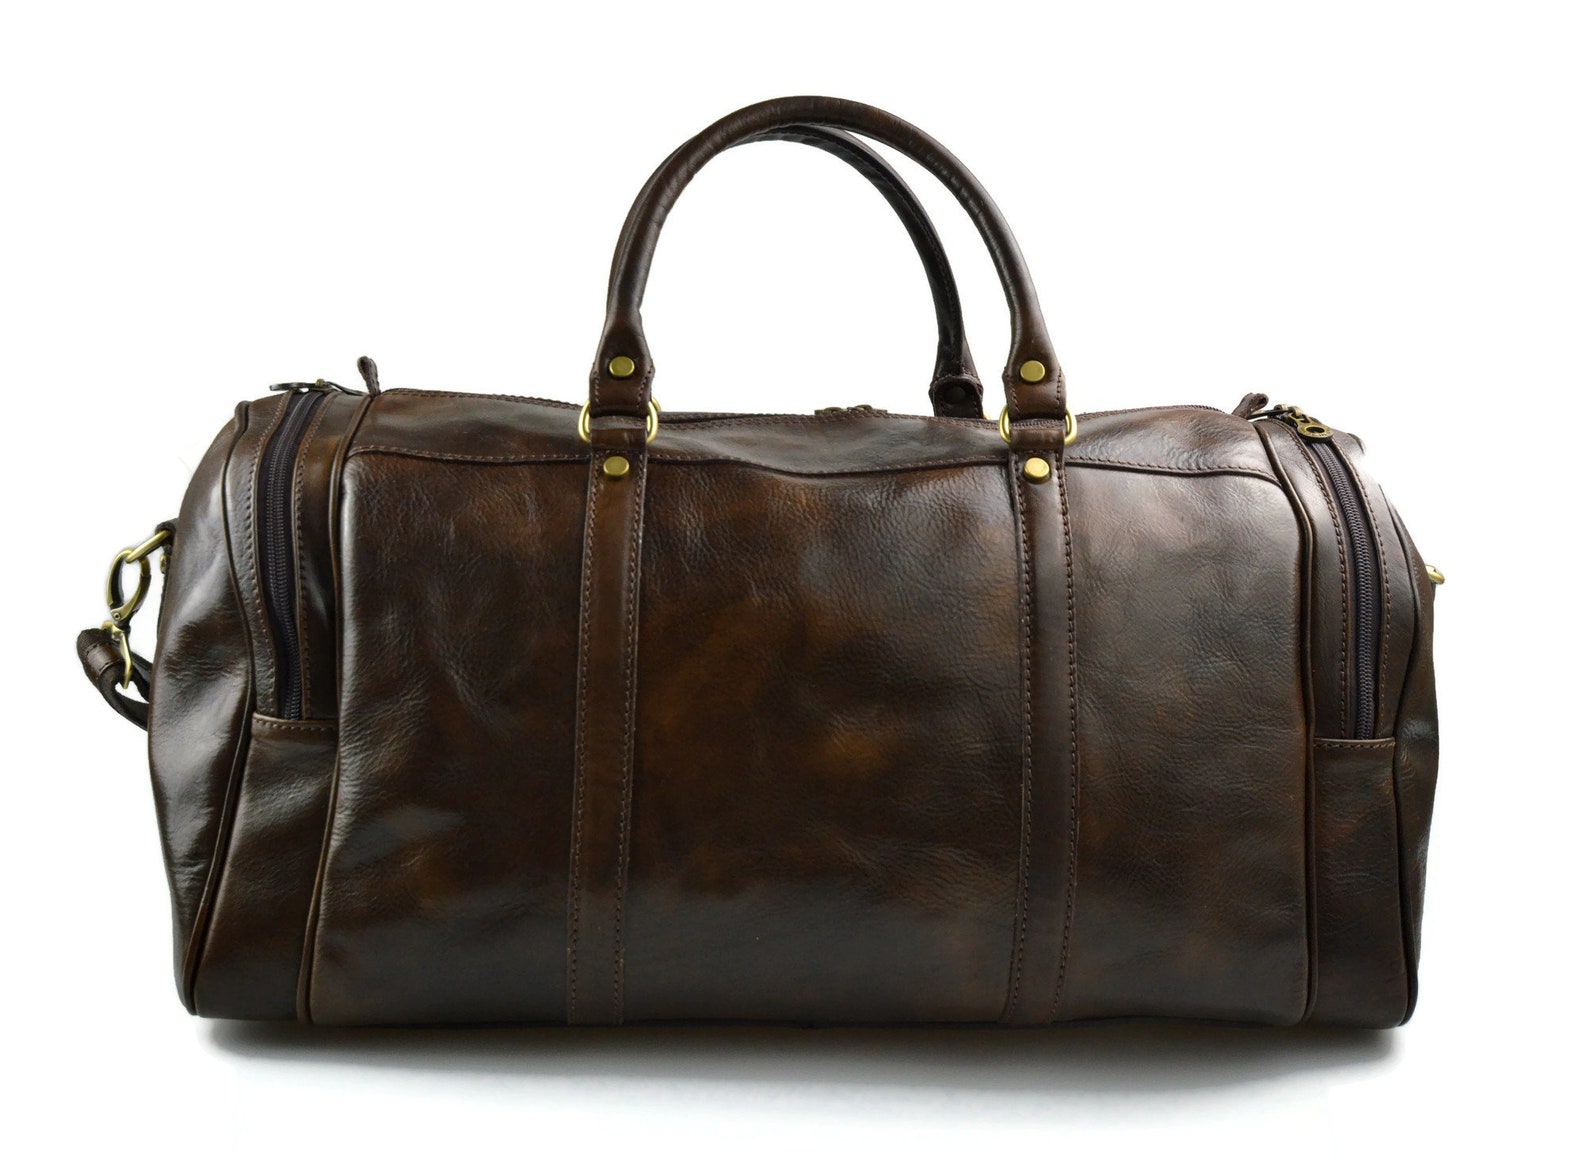 Mens leather duffle bag black brown shoulder bag travel bag | Etsy